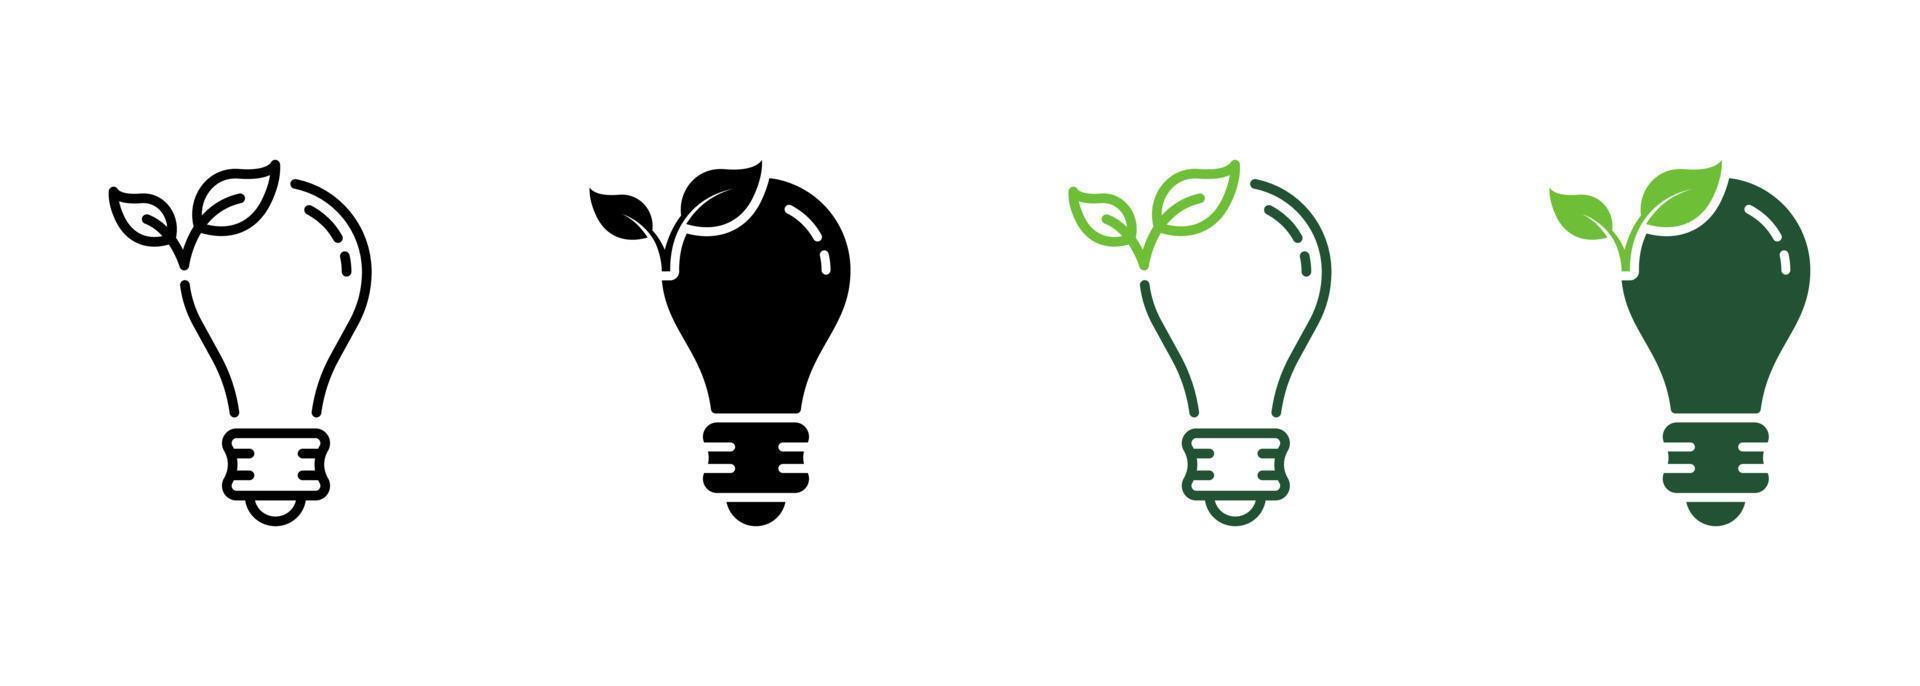 ligne d'ampoule eco et jeu d'icônes de silhouette. ampoule écologique. lampe électrique écologique avec collection de symboles de feuilles sur fond blanc. préservation de l'environnement. illustration vectorielle isolée. vecteur